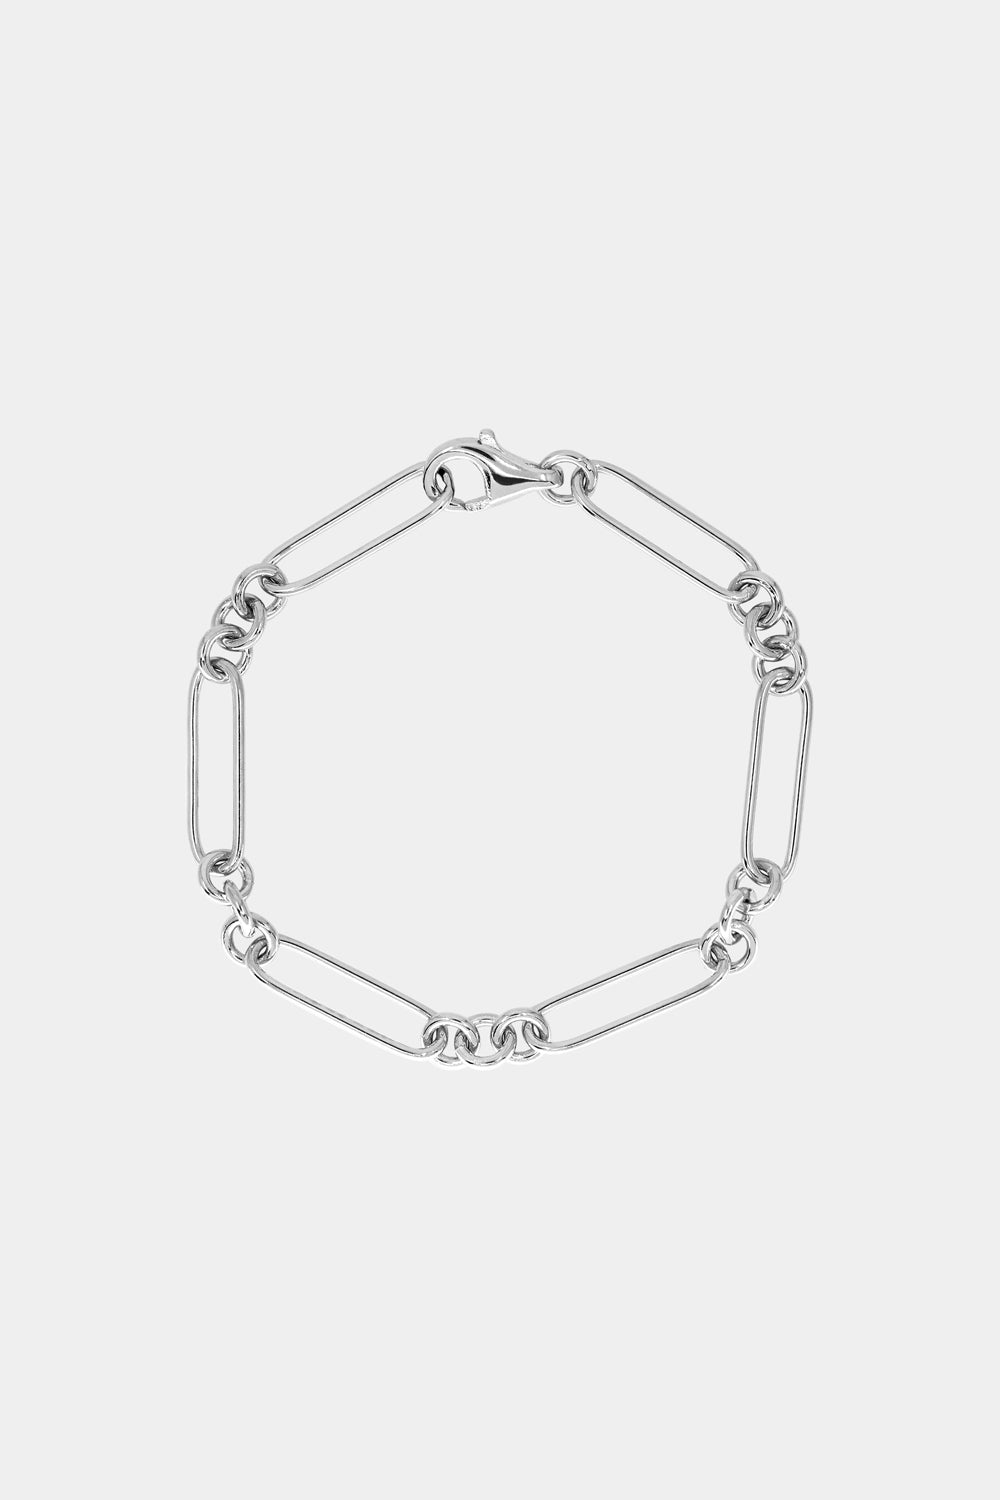 Lennox Bracelet | Silver or 9K White Gold